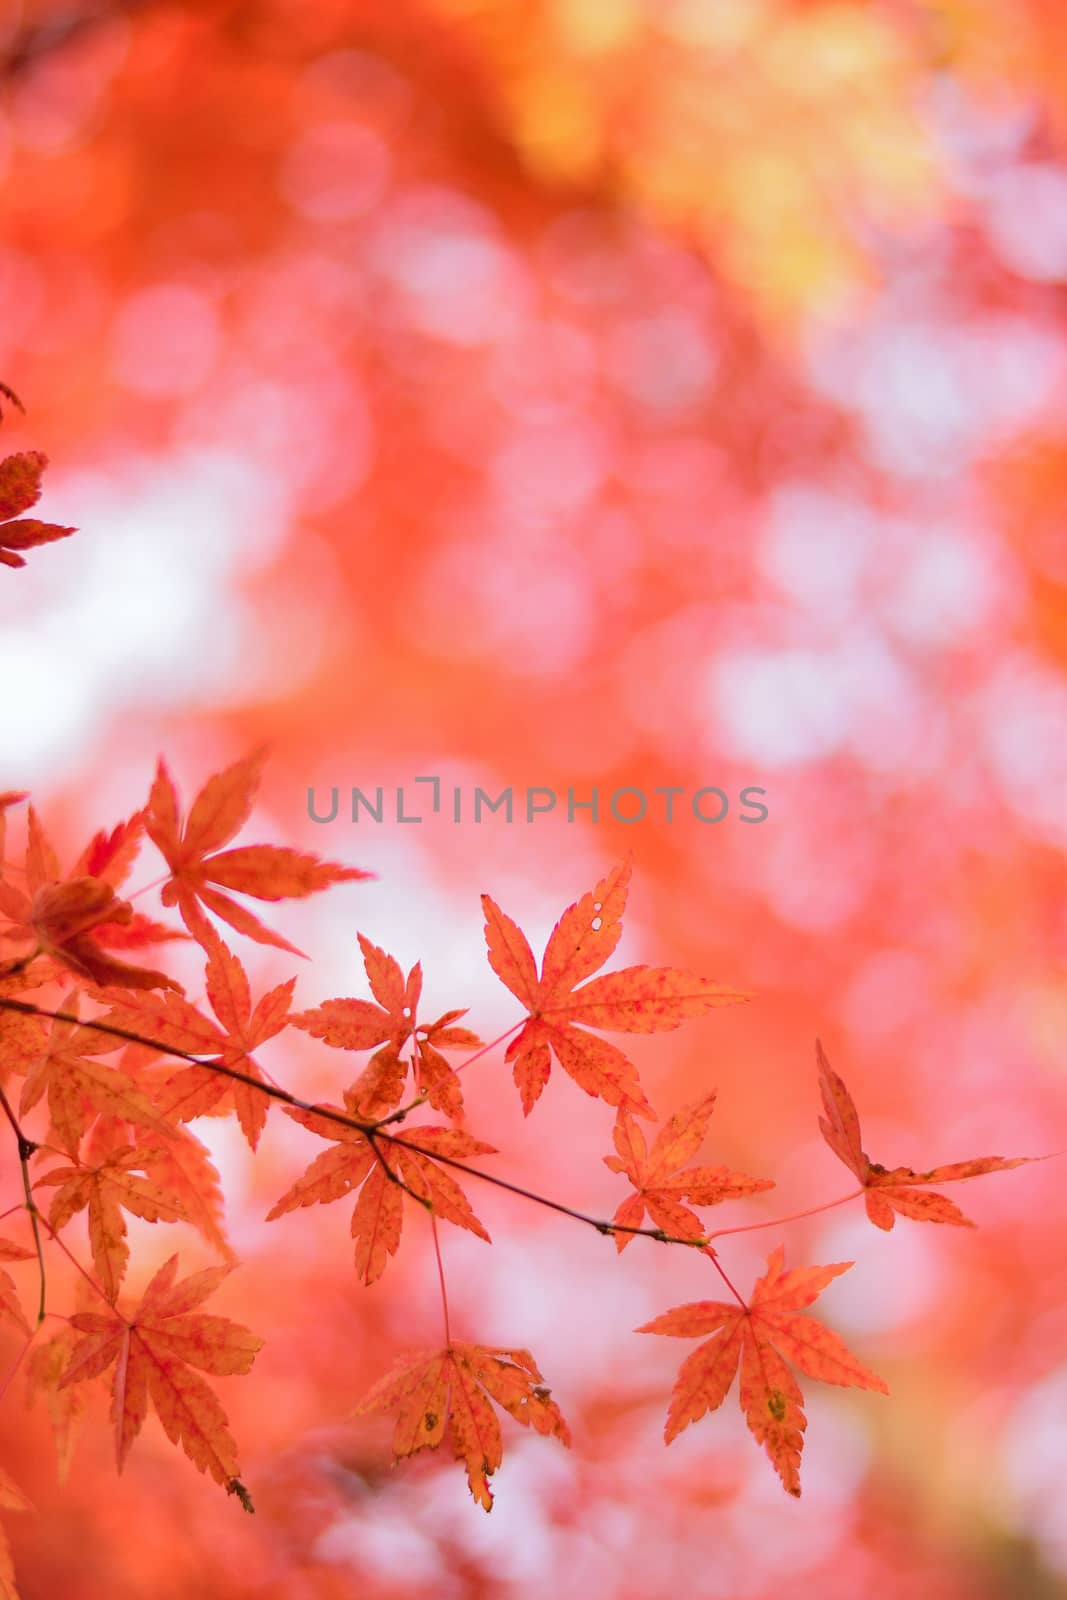 Macro details of Vibrant Japanese Autumn Maple leaves by shubhashish